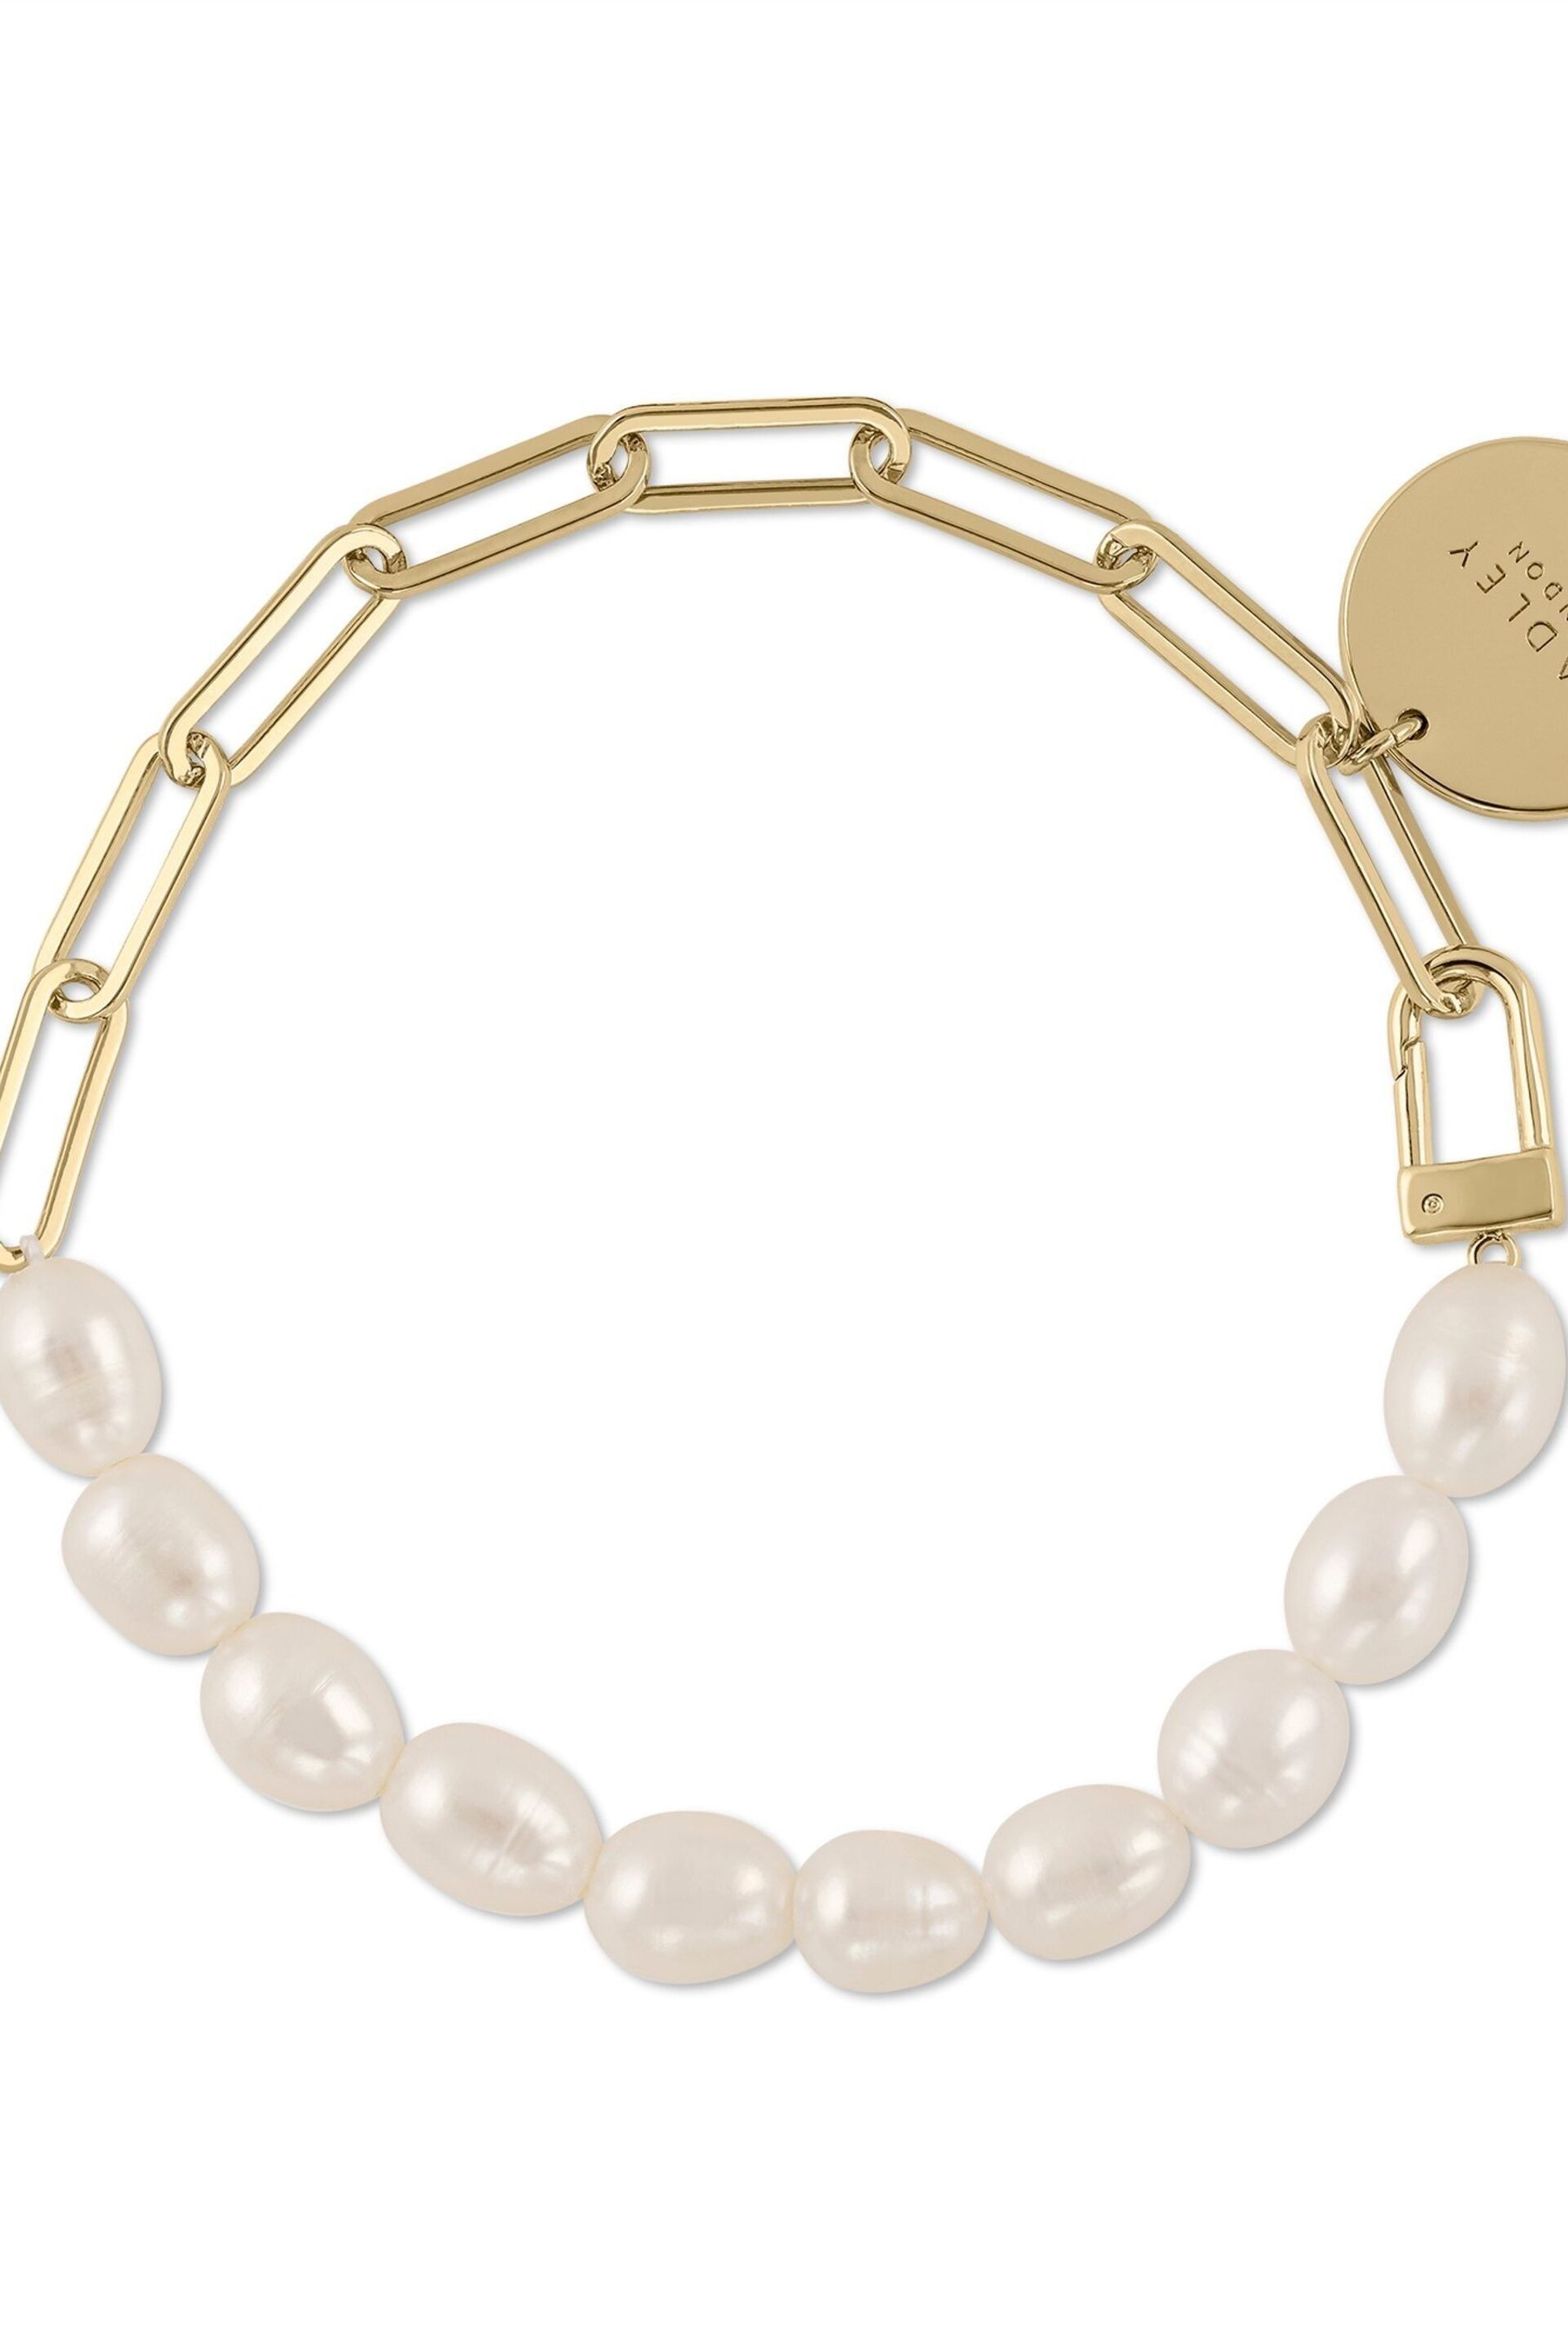 Radley Ladies Princess Street Fresh Water Pearl 18ct Gold Plated Bracelet RYJ3316S - Image 2 of 4